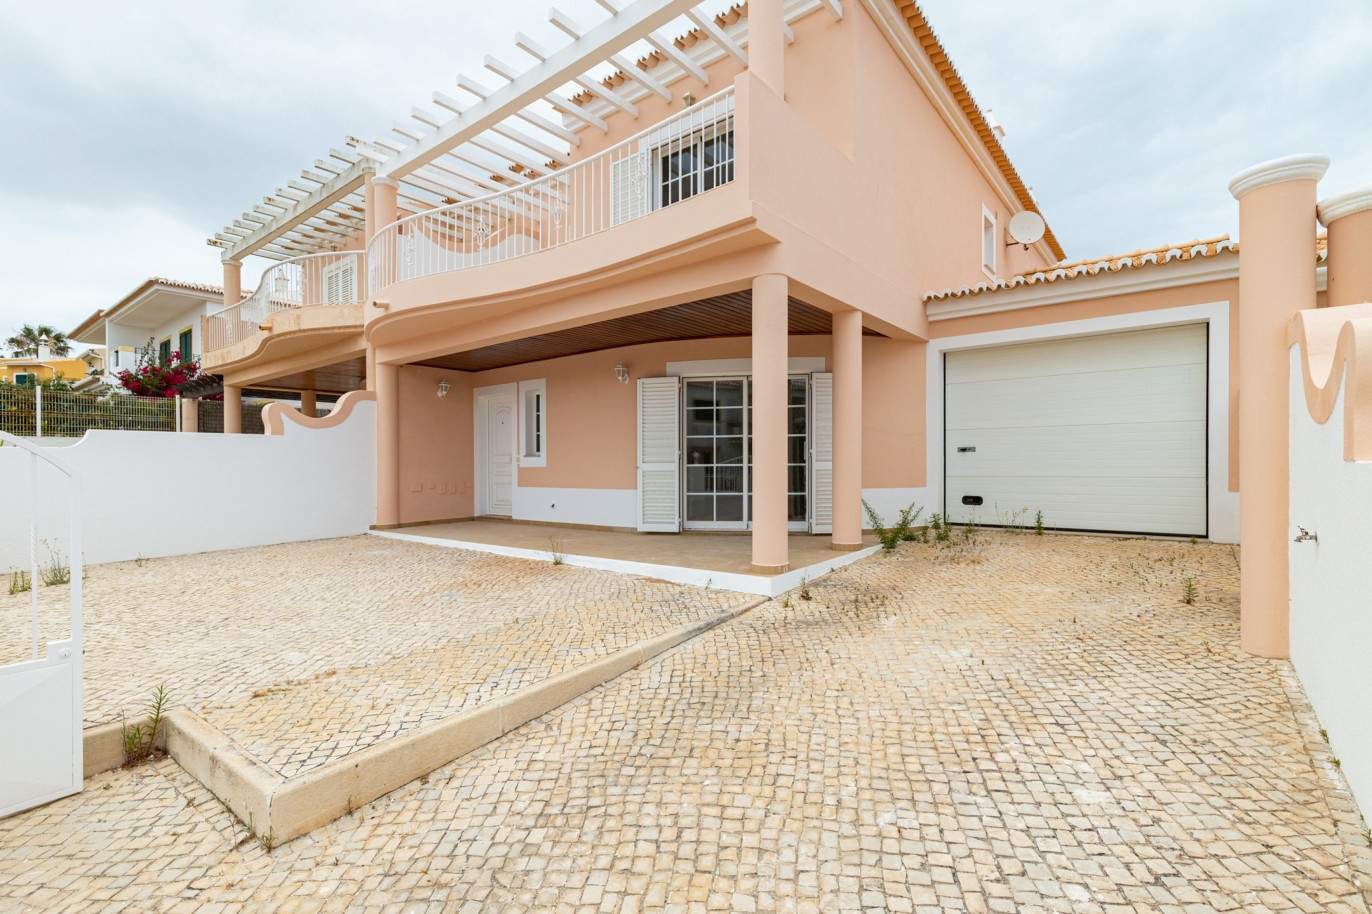 Villa de 3 dormitorios en venta en Porto de Mós, Lagos, Algarve_201762